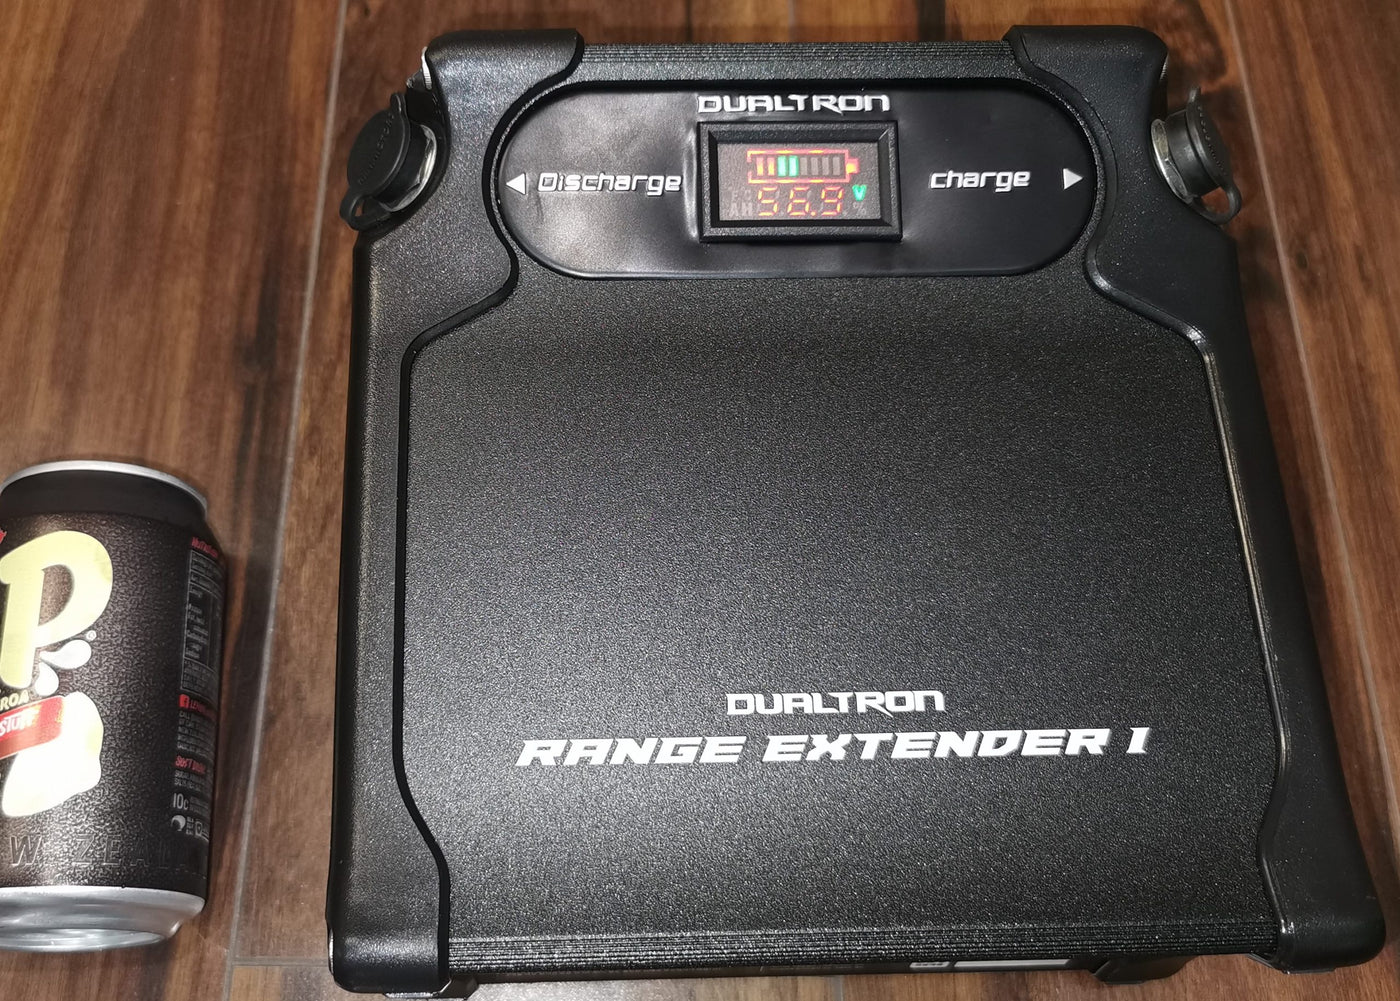 Dualtron Range Extender I (LG: 60V 12Ah) Battery System